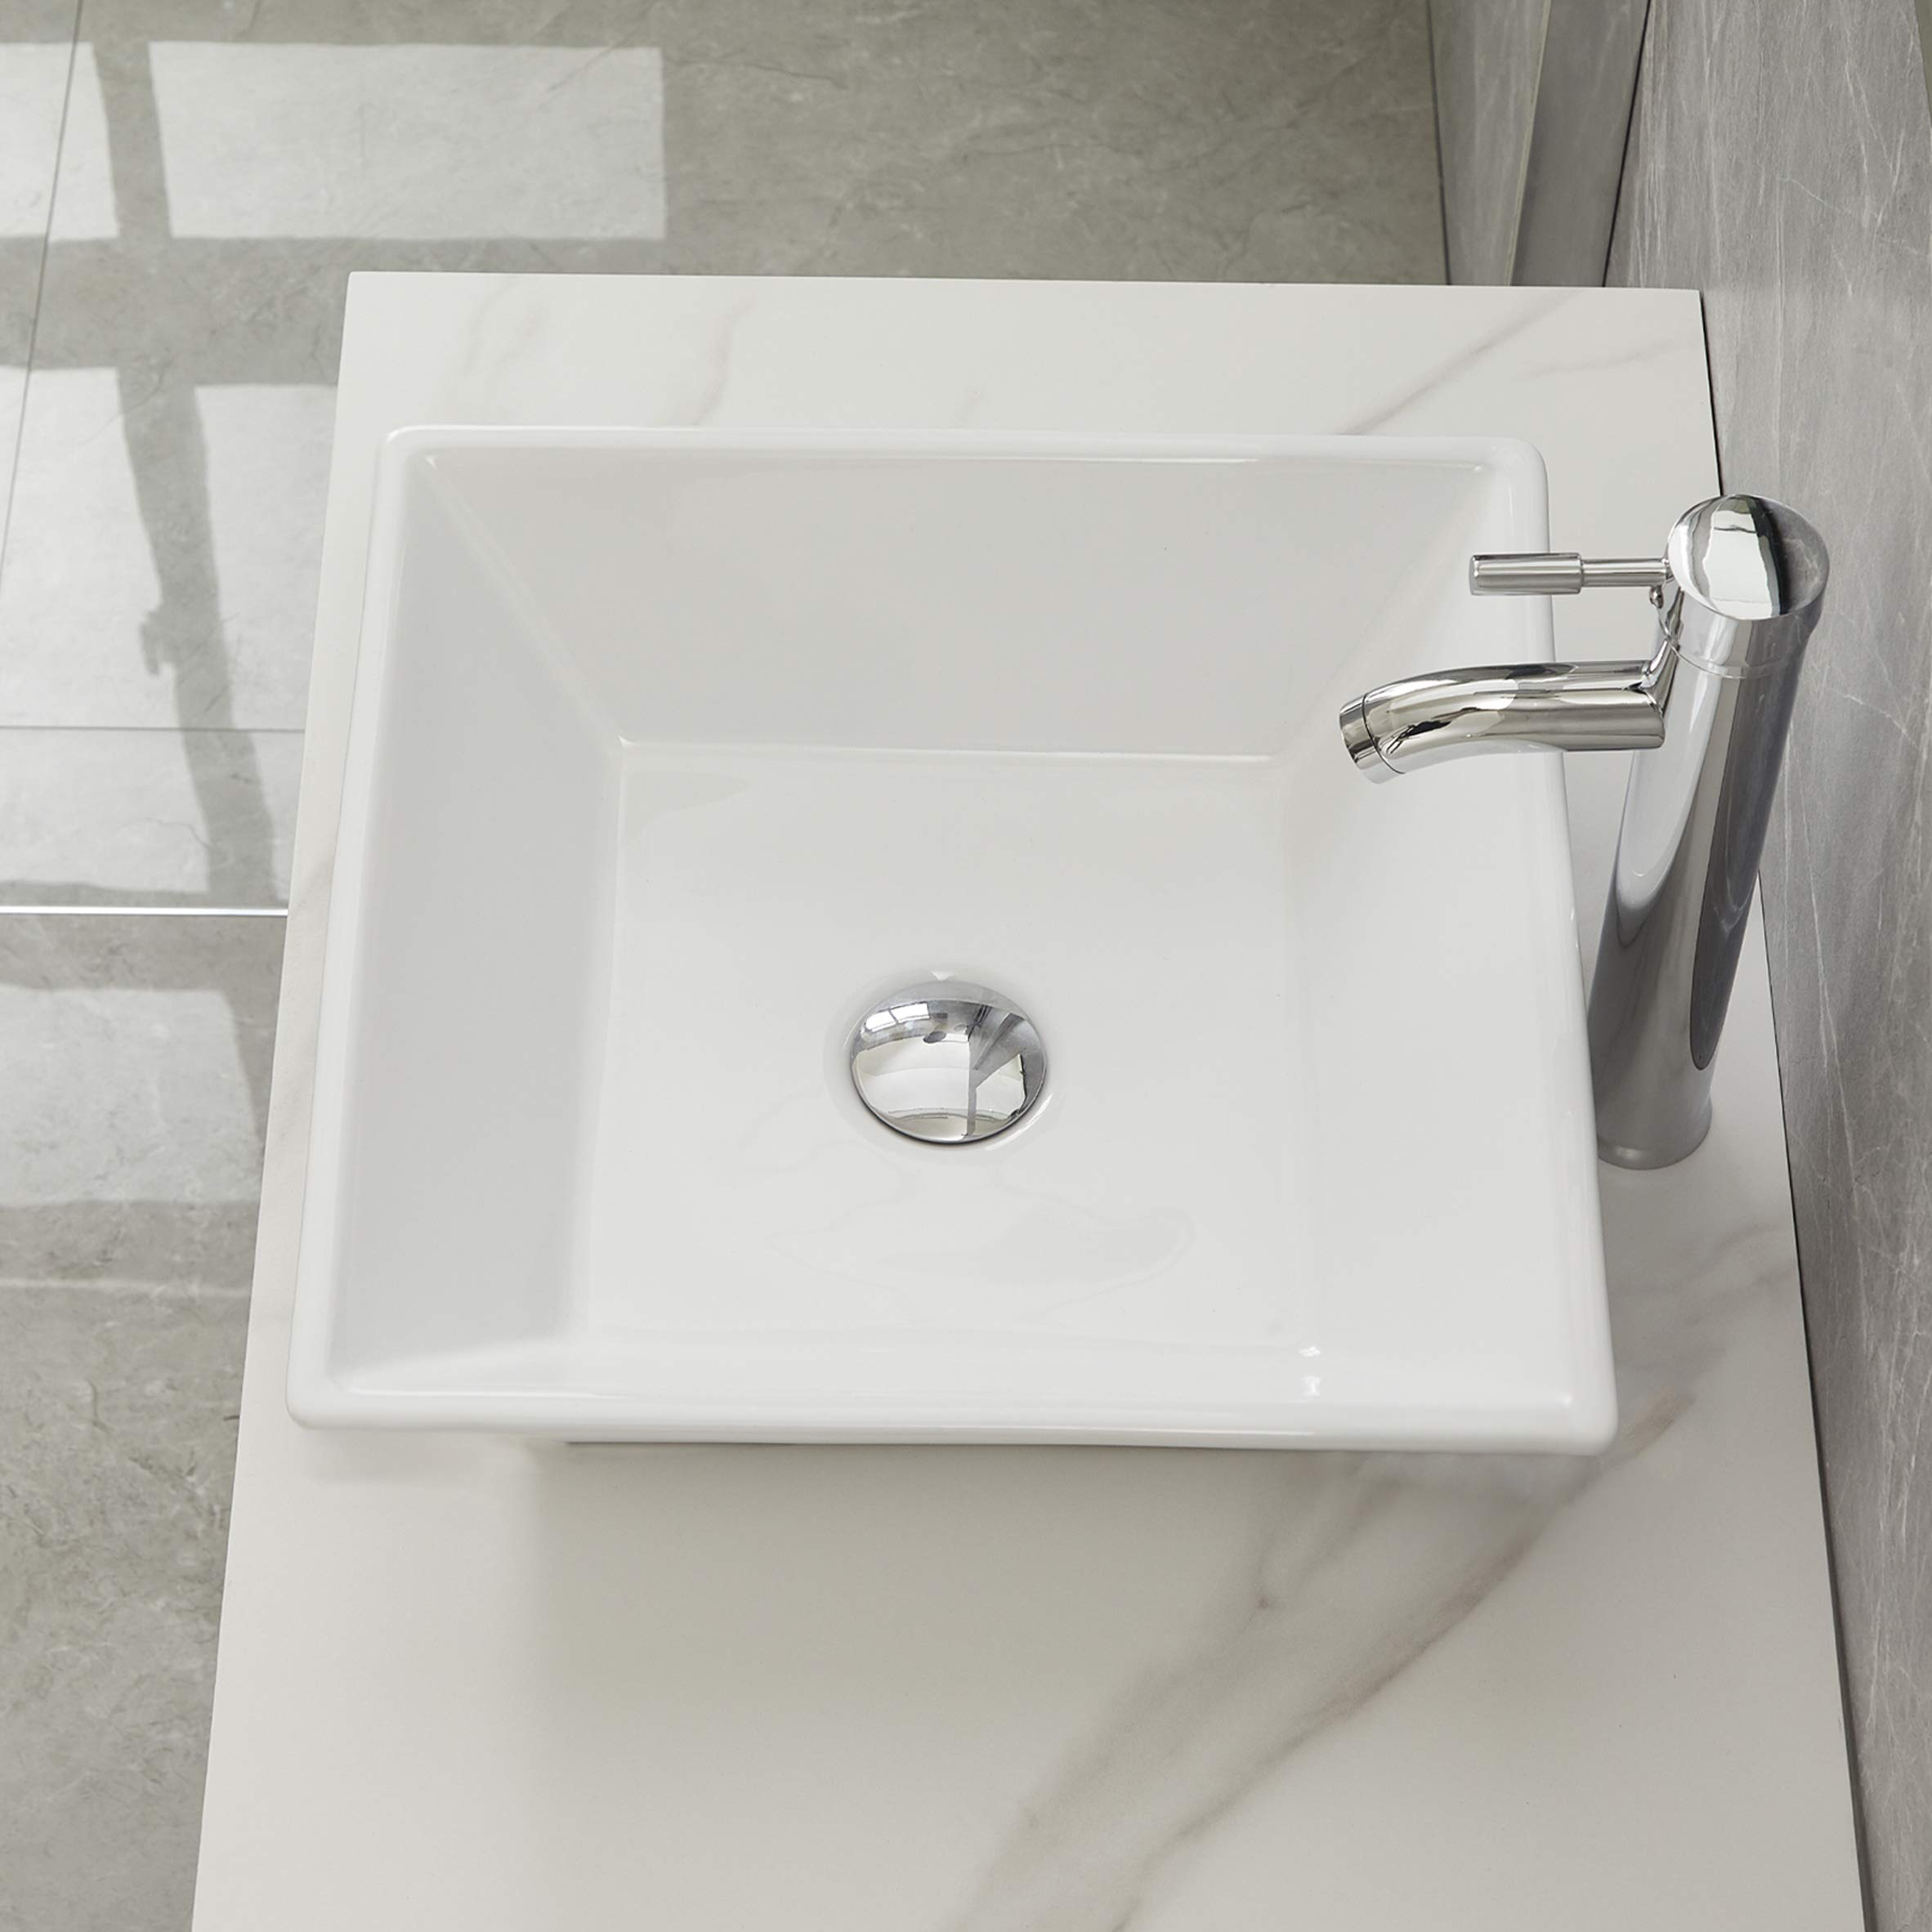 Aquacubic Square Over Counter Bathroom Vanity White Ceramic Art Sink